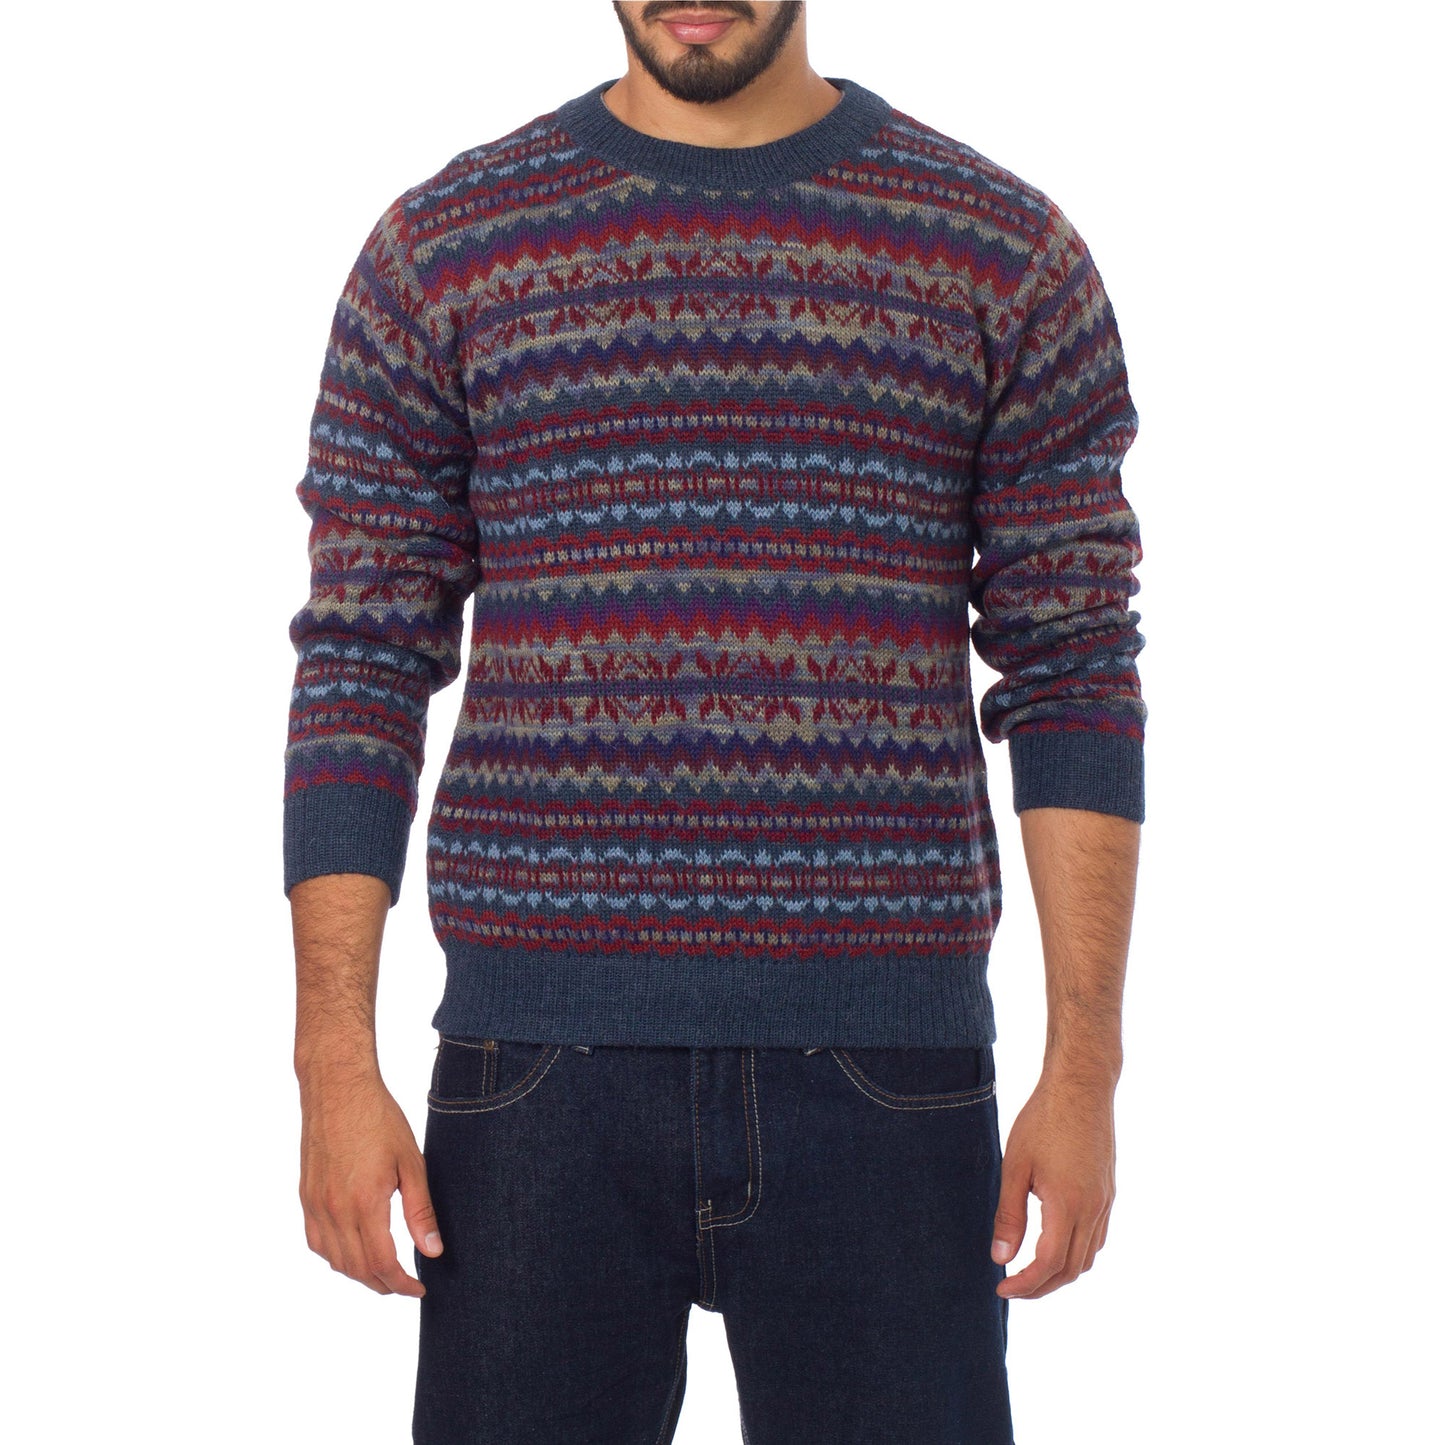 Colca Blue Men's 100% Alpaca Sweater